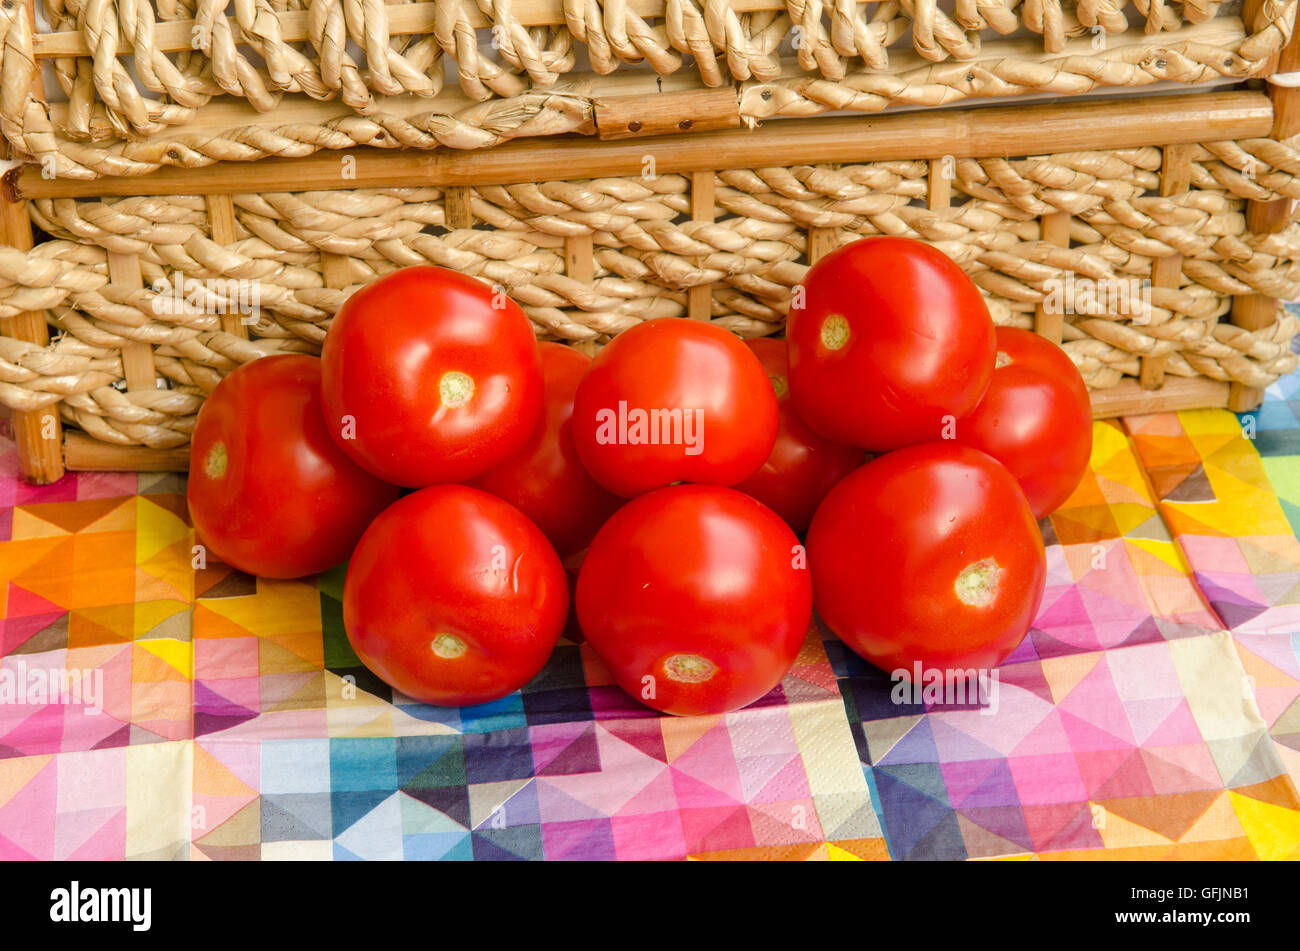 Los tomates apilados contra una cesta tejida Foto de stock